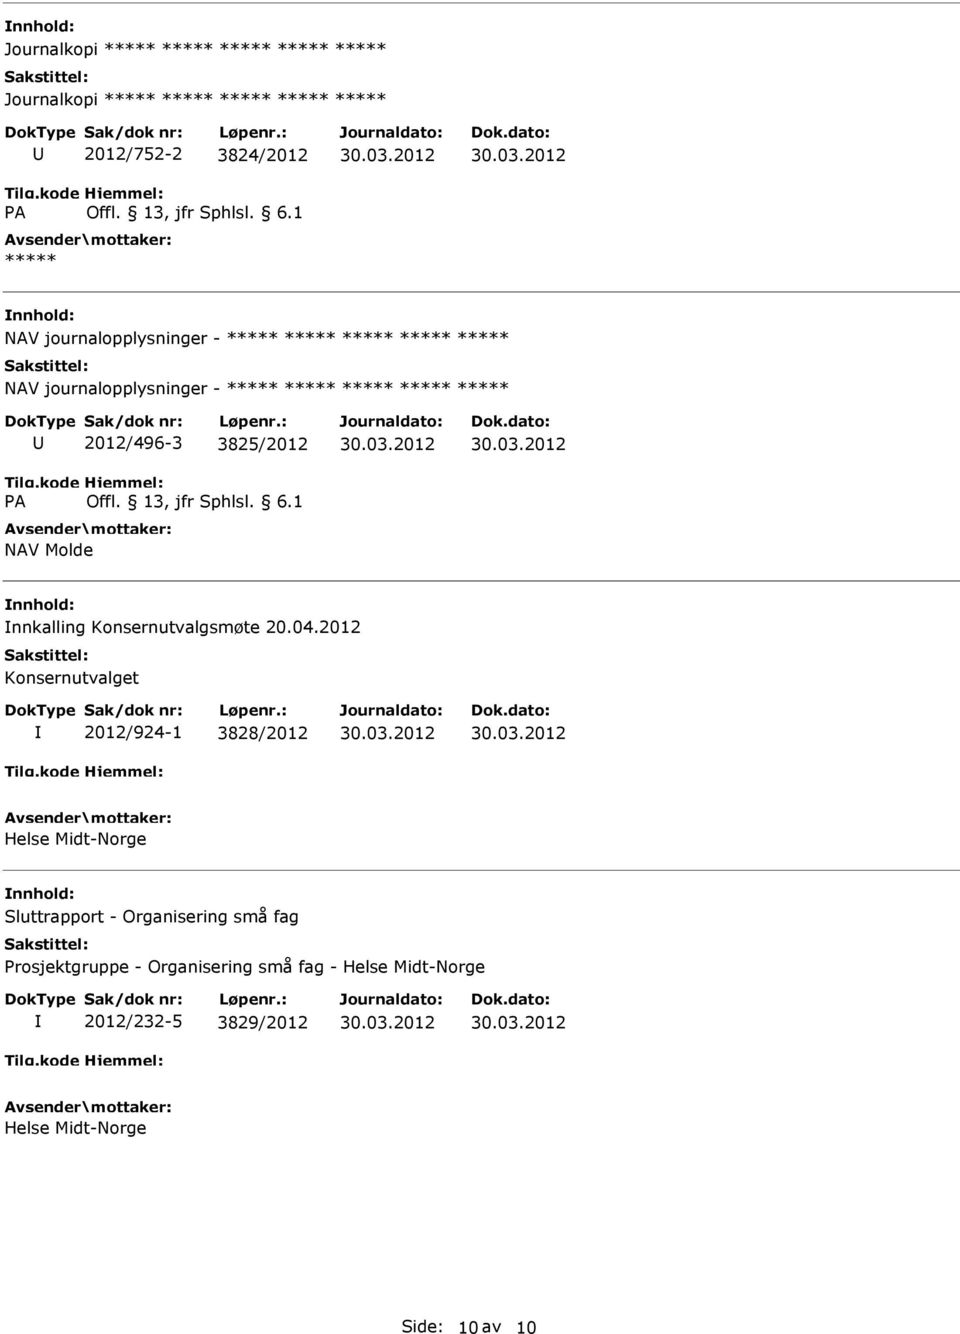 2012 Konsernutvalget 2012/924-1 3828/2012 Helse Midt-Norge Sluttrapport - Organisering små